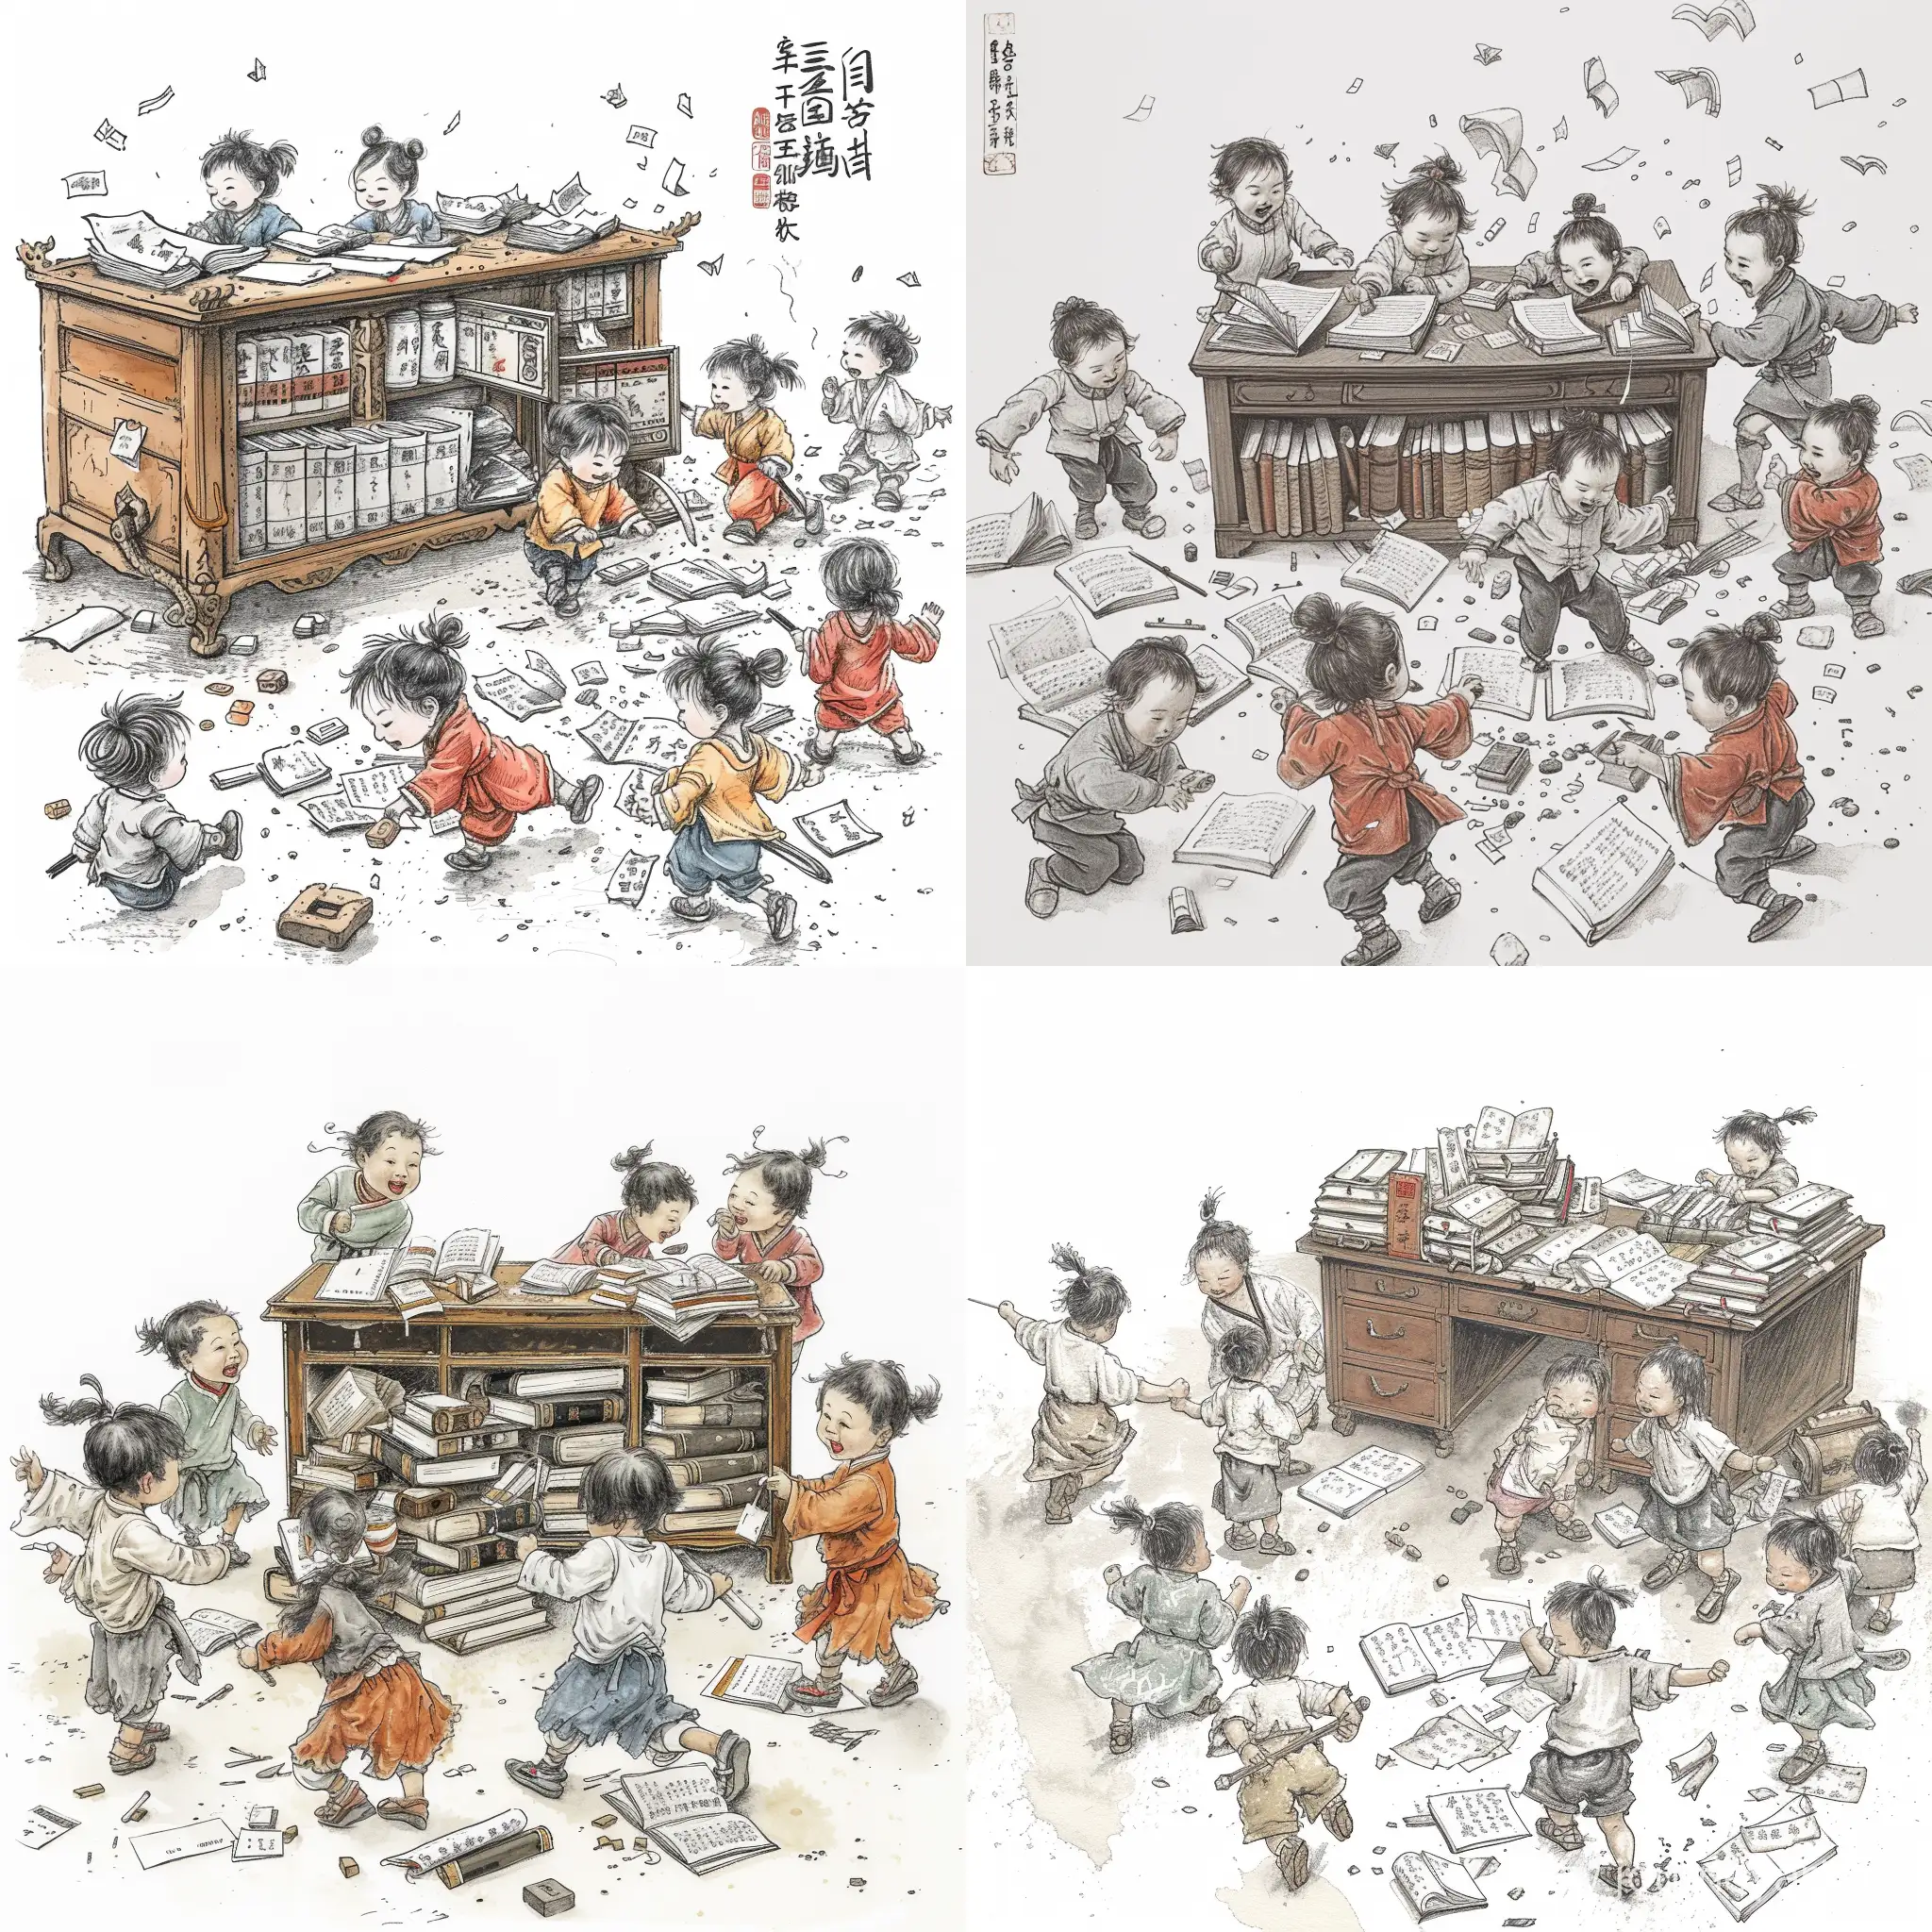 一群中国古代小孩，在书房嘻嘻打闹，书桌上半满四书五经等古籍，地上有打翻的笔墨纸砚，小孩大概5-7个，年龄 在 5，6，7，8岁；仅衣服有颜色，其他场景使用黑白水墨